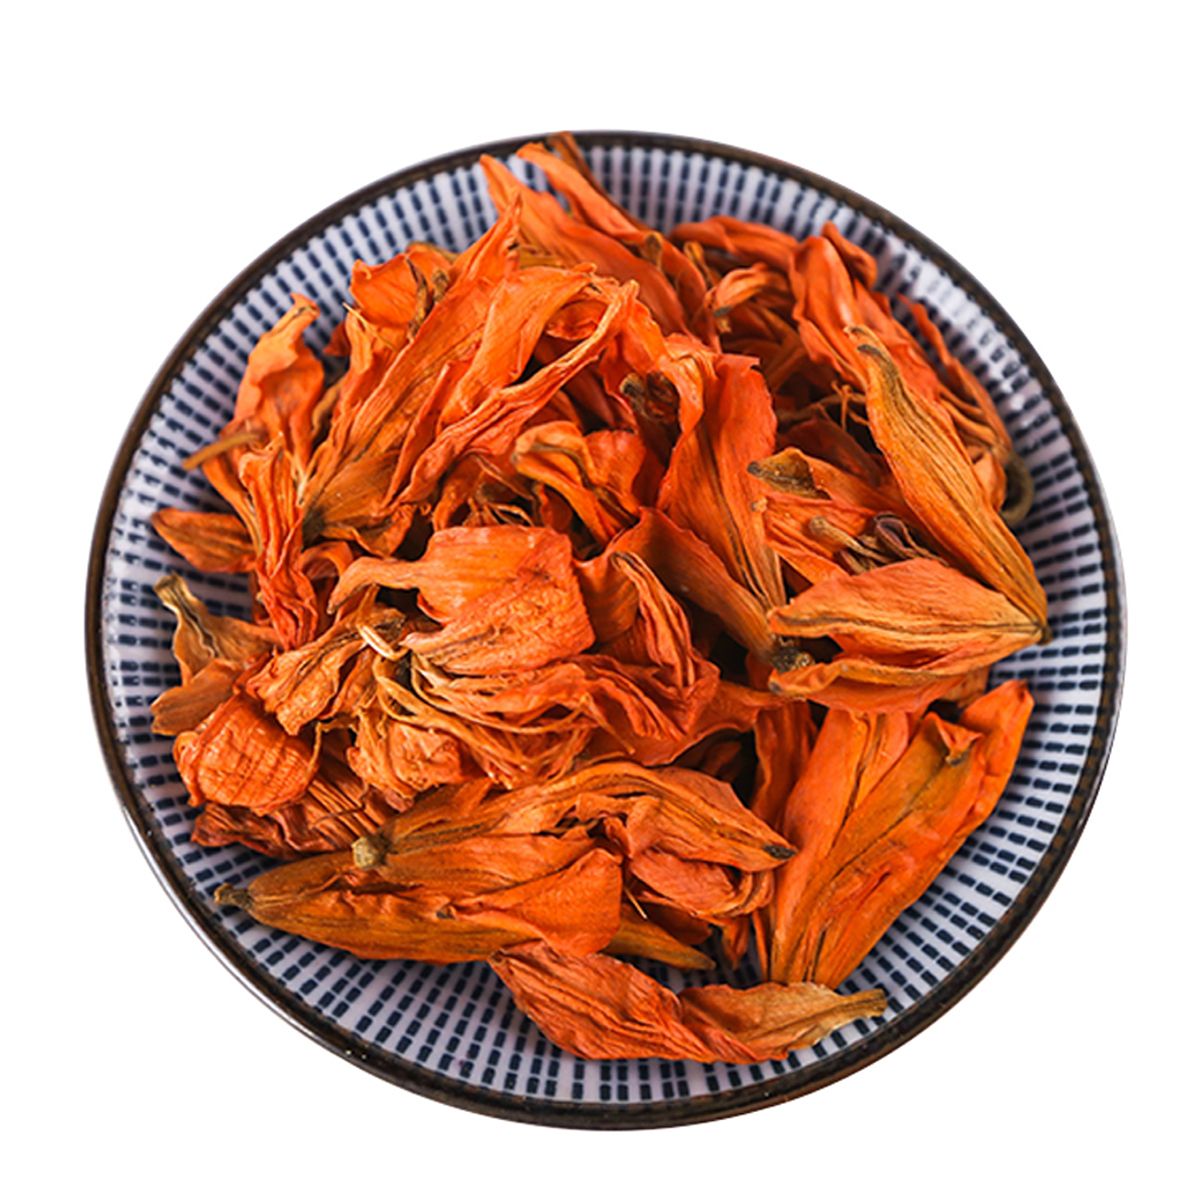 Hot ventes séchées Lily thé de fleurs séchées de thé Lily Cueillette à la main Elmination des produits toxiques thé chinois de soins de santé